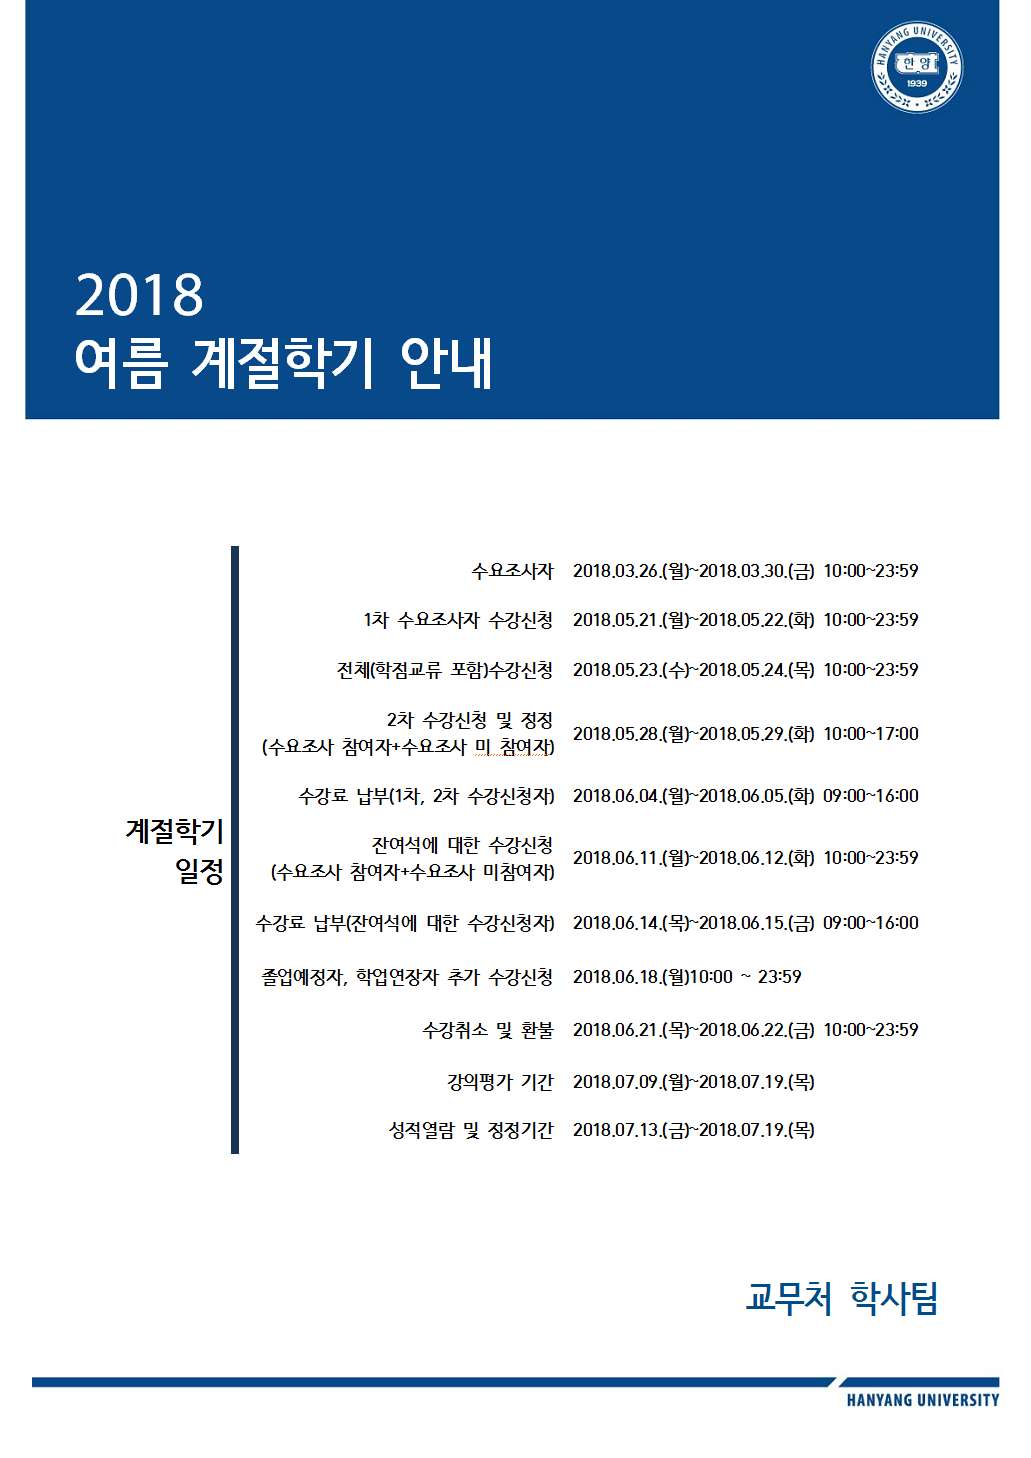 2018 여름 계절학기 일정 안내.png